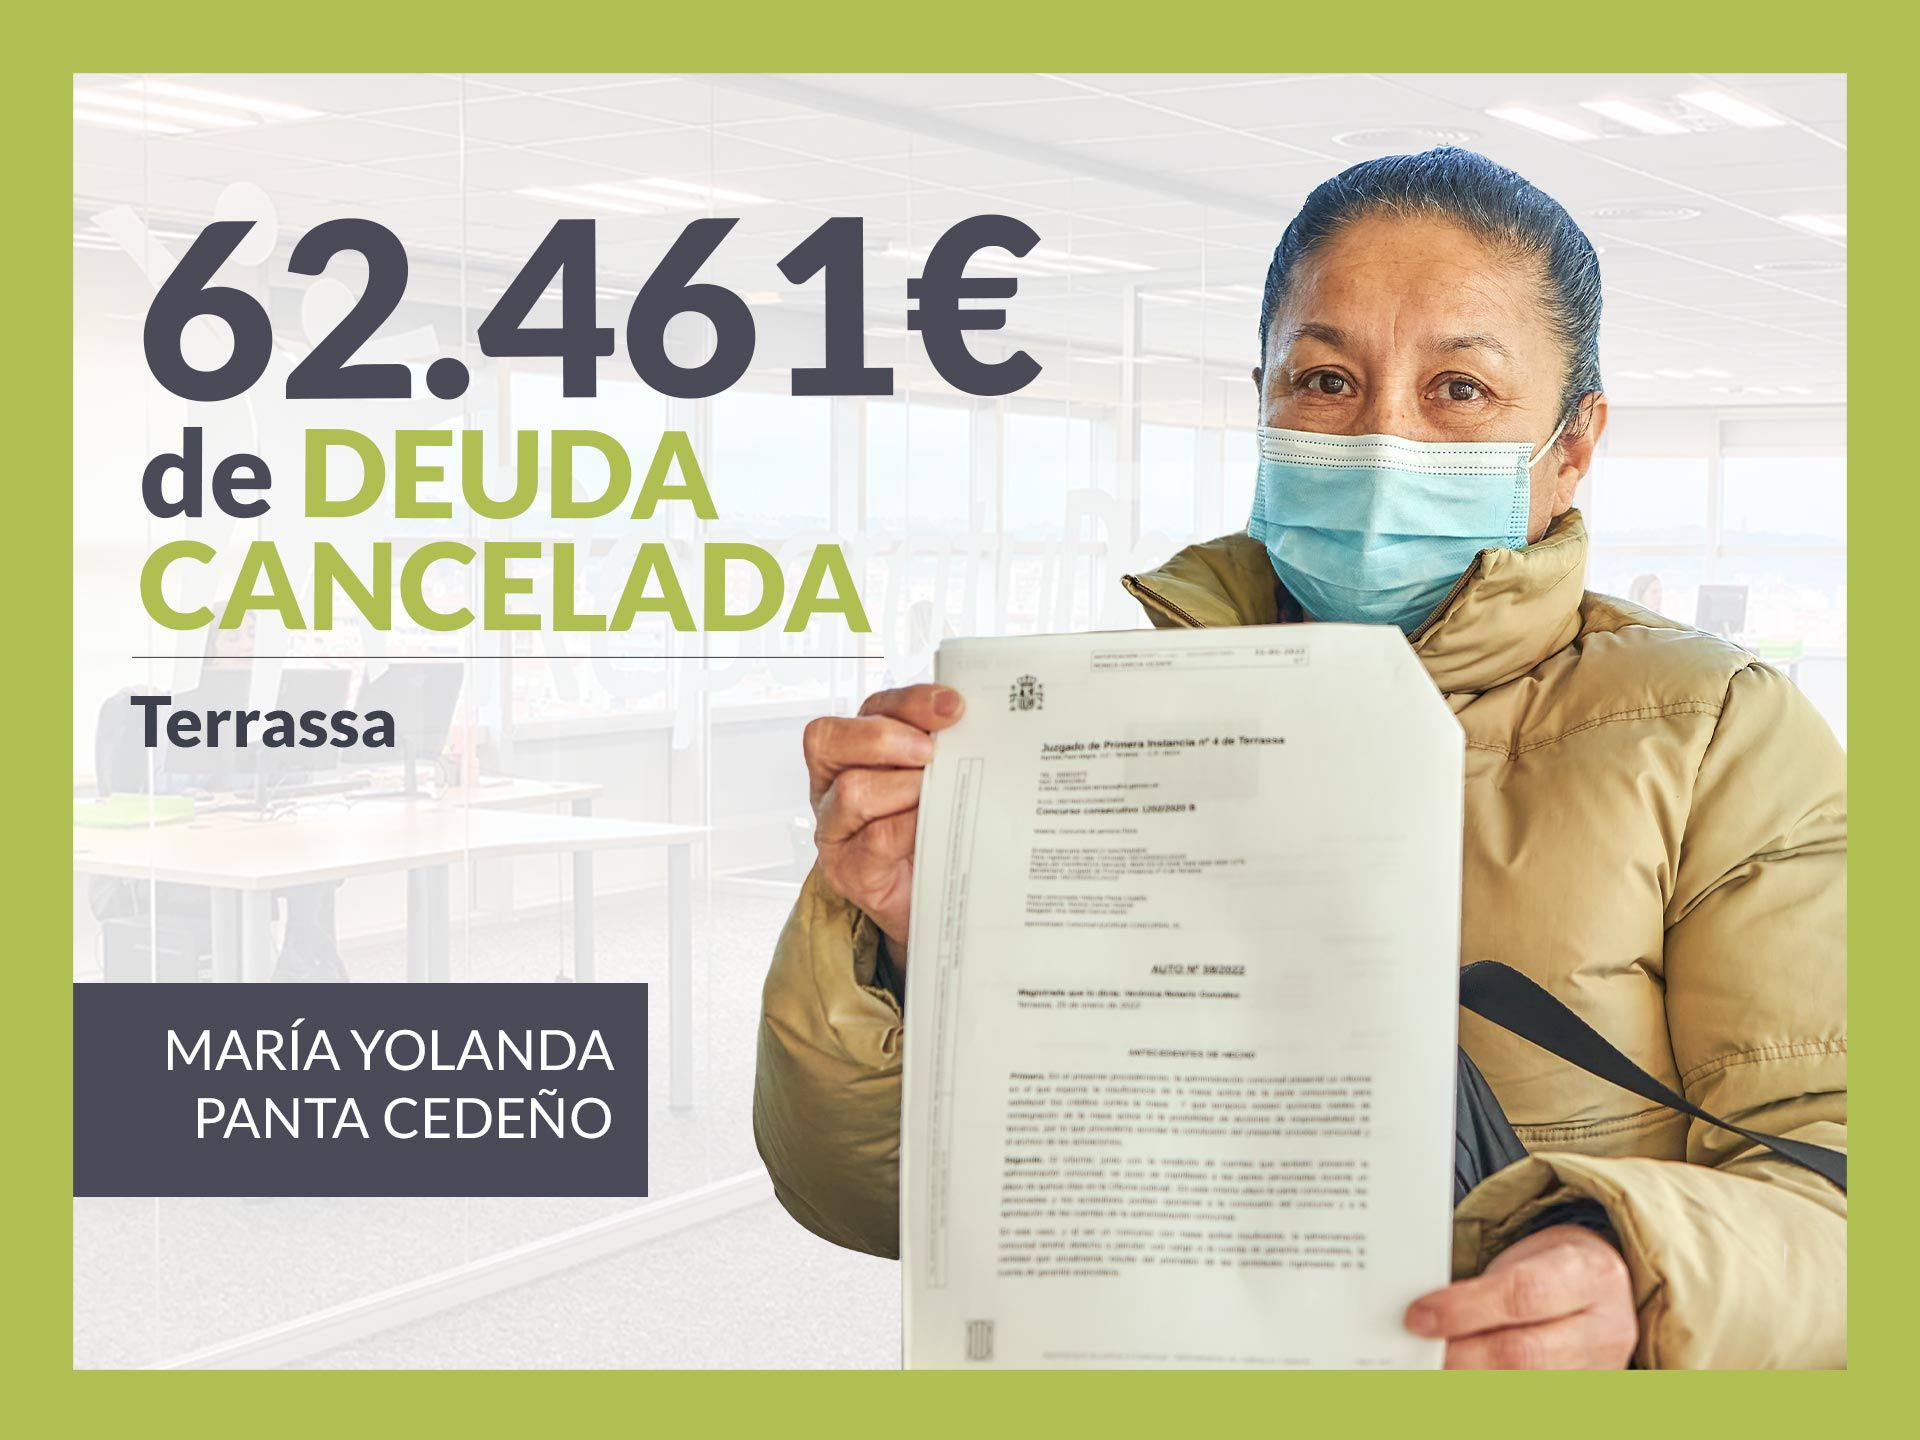 Repara tu Deuda Abogados cancela 62.461 ? en Terrassa (Barcelona) con la Ley de la Segunda Oportunidad